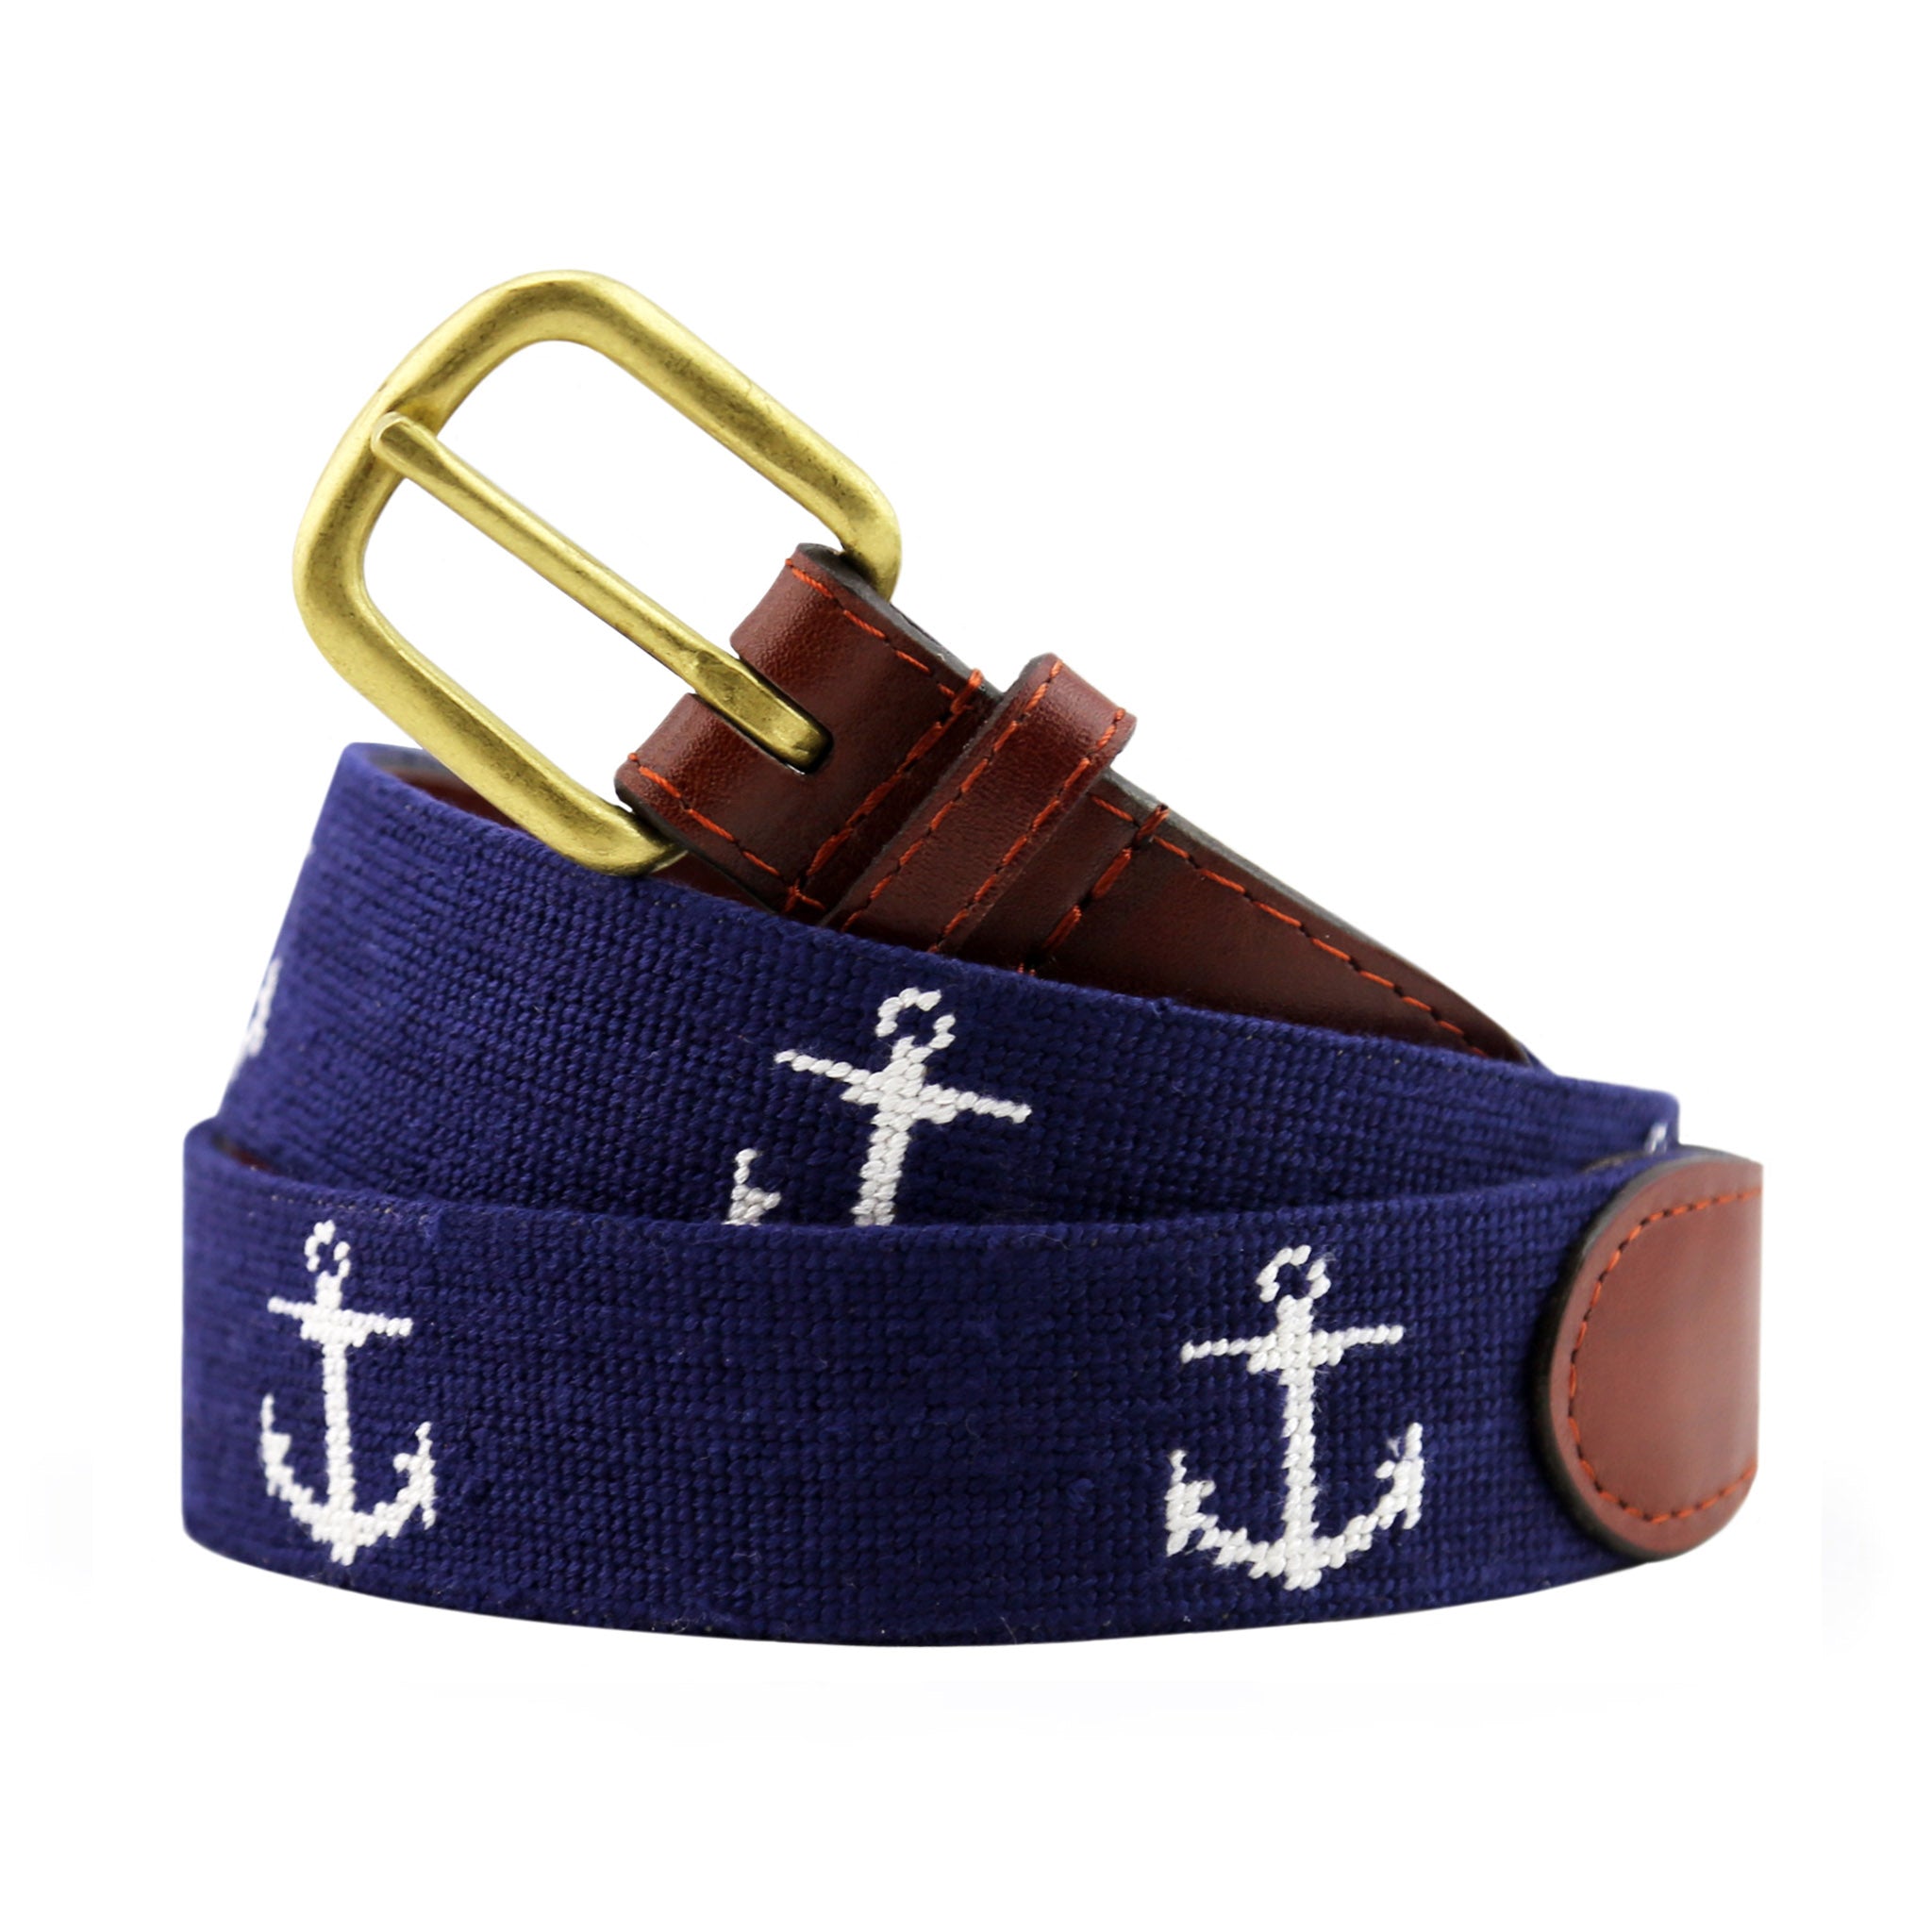 Anchor belt buckle, maritime belt buckle